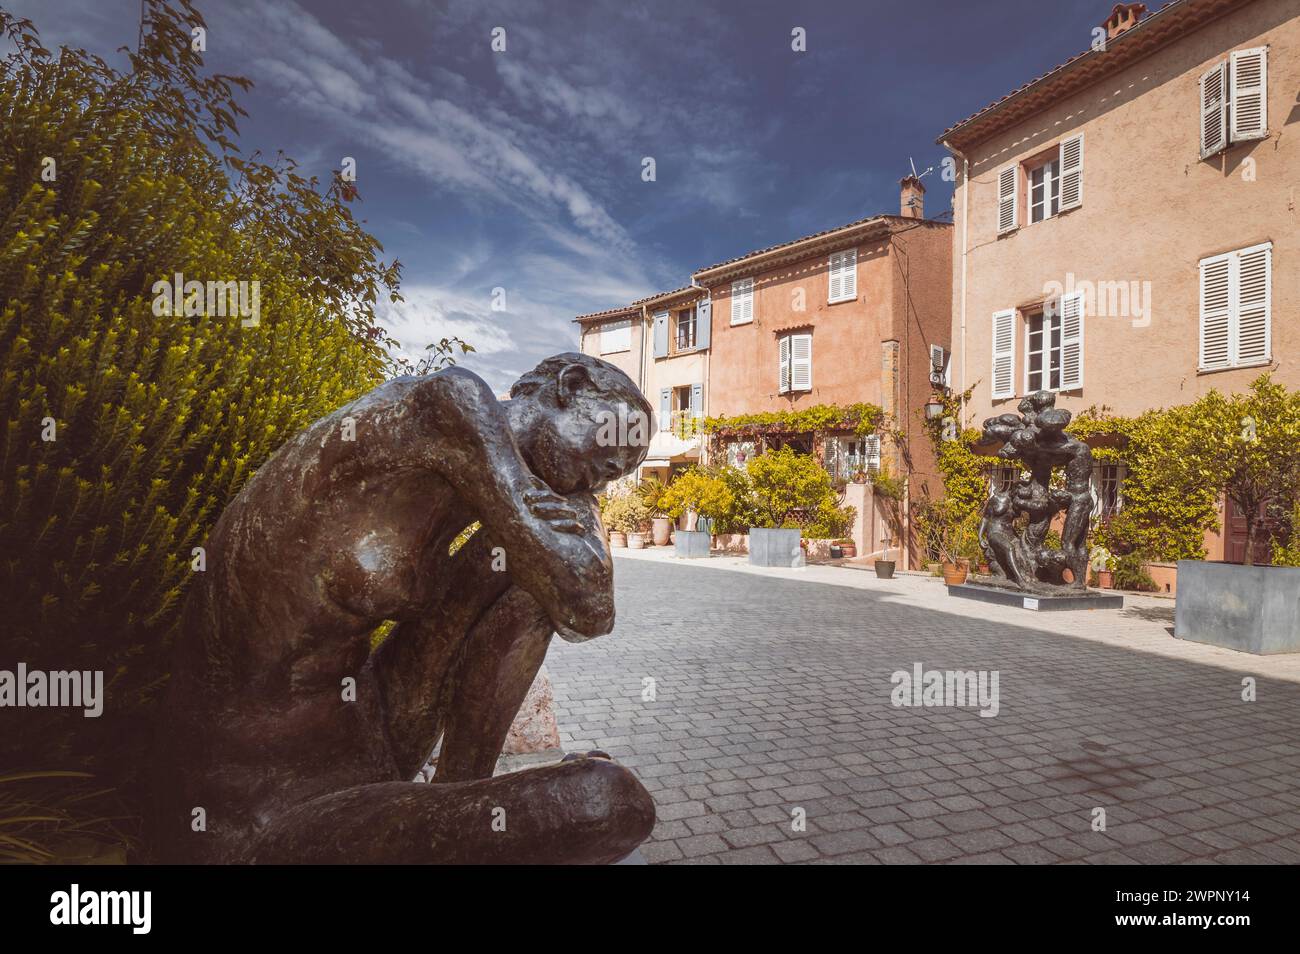 Ruelle romantique avec sculpture au premier plan dans le centre-ville médiéval de Mougins, Provence-Alpes-Côte d'Azur dans le sud de la France Banque D'Images